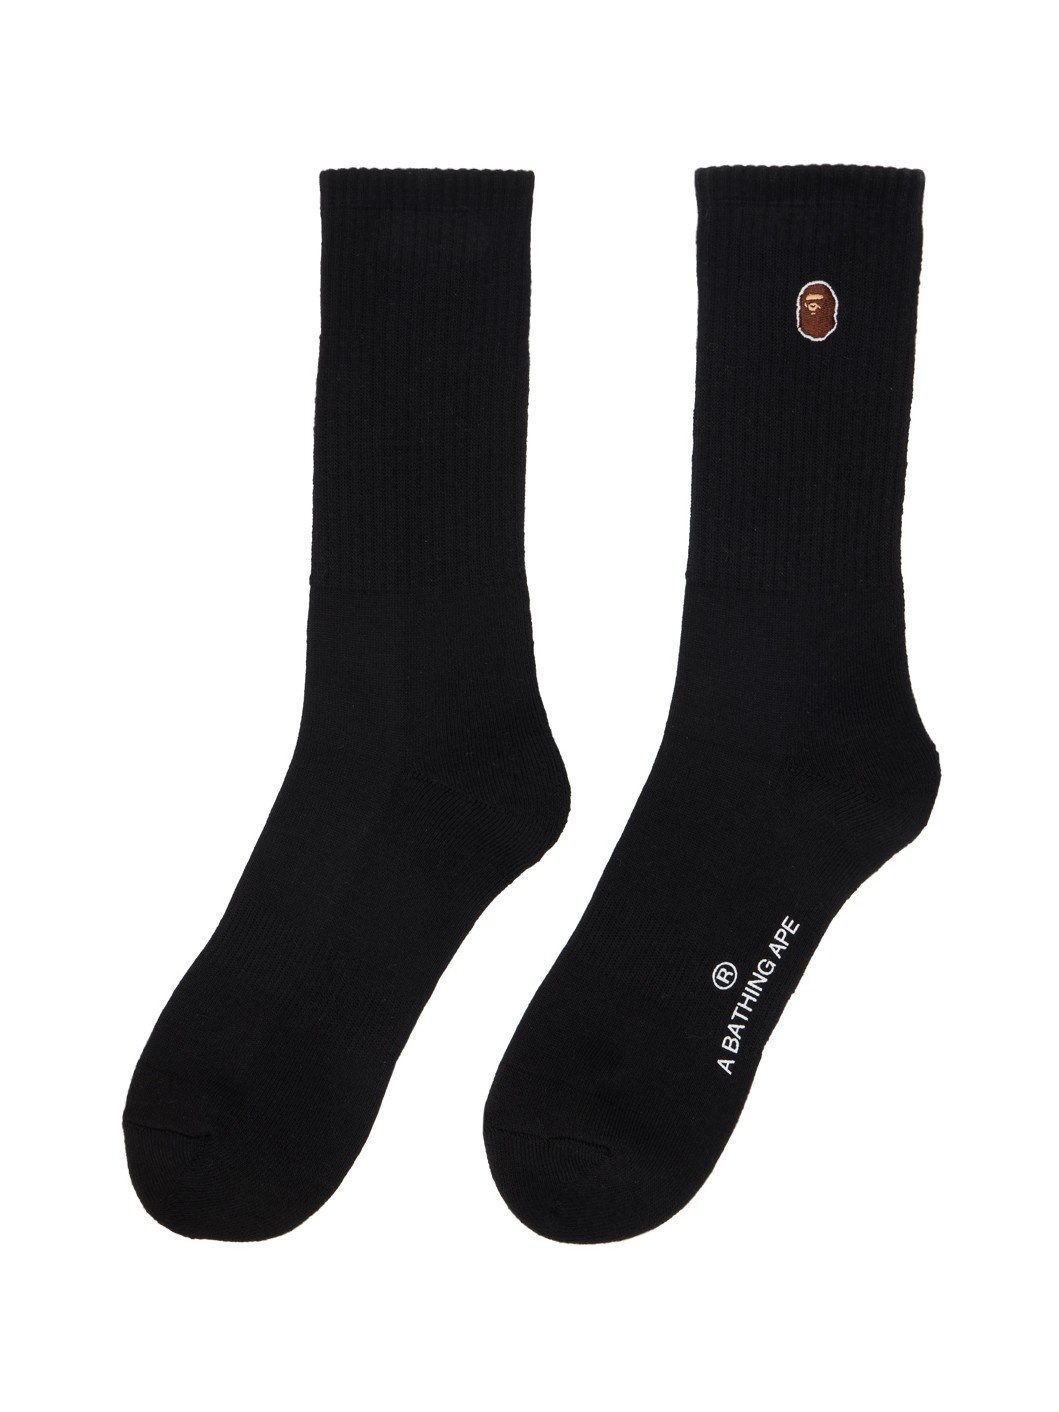 Black Ape Head Socks - 2